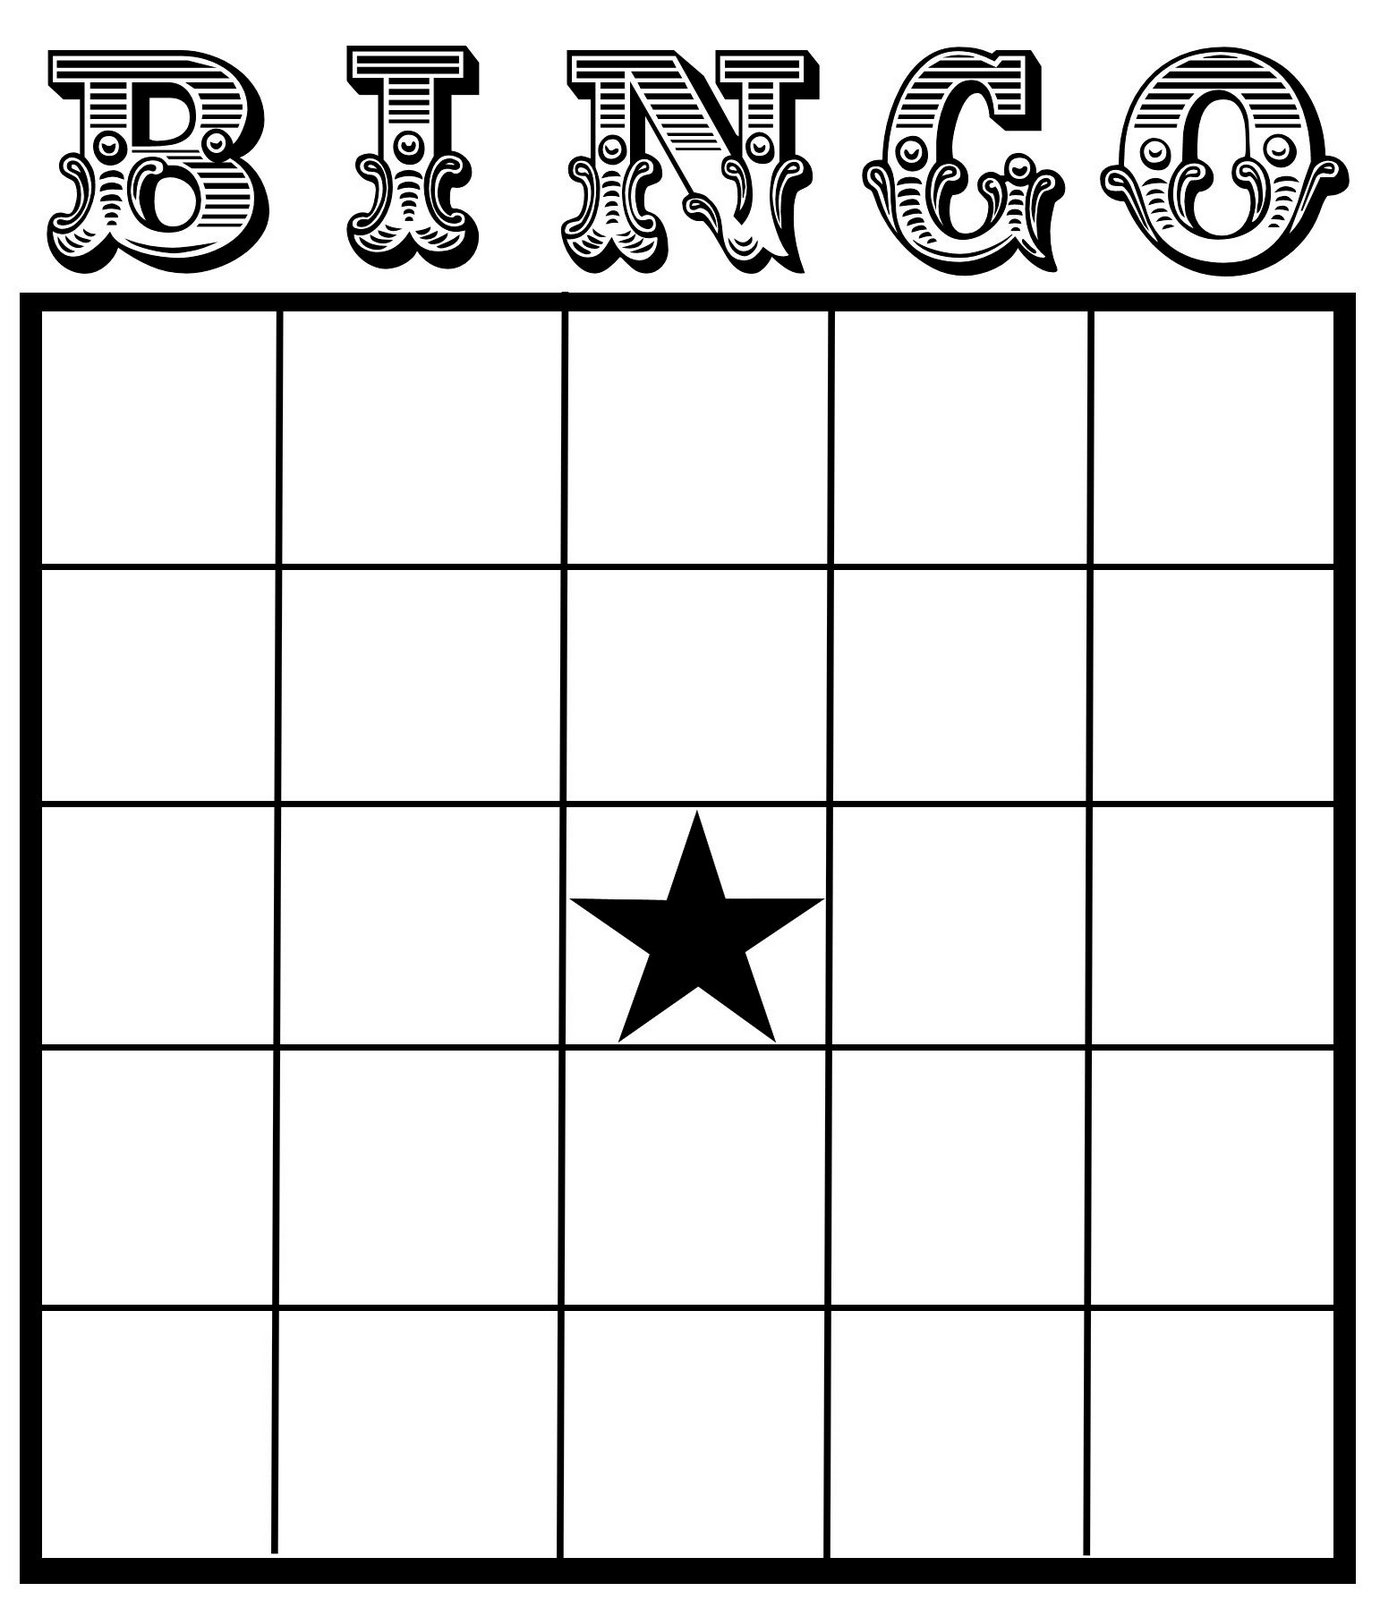 11 Best Images of Excel Bingo Card Printable Template Printable Blank